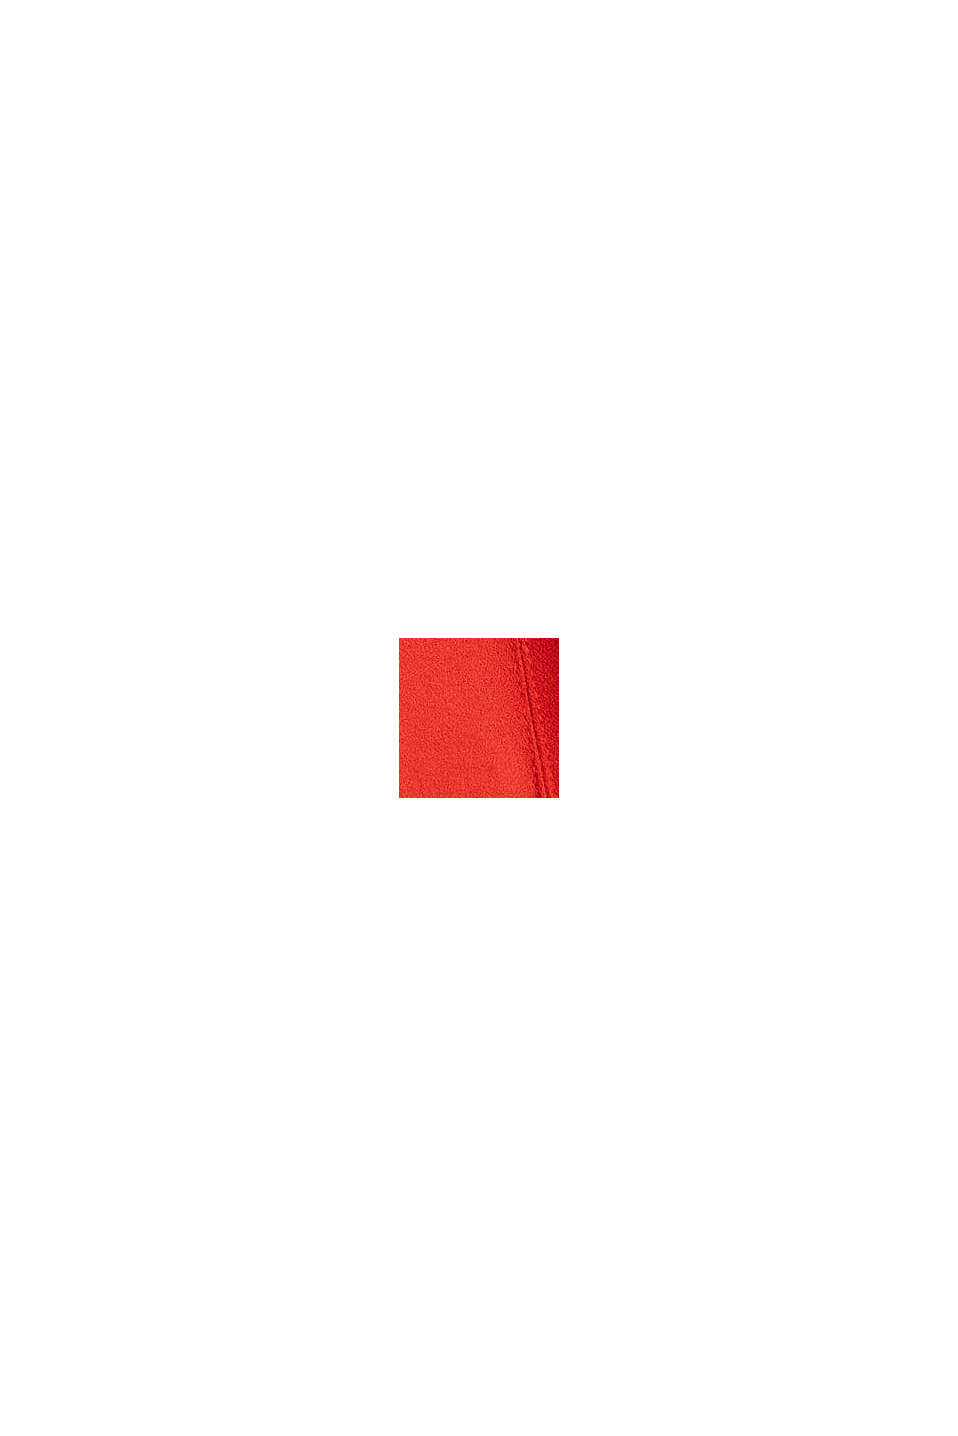 Af genanvendte materialer: Midikjole med bindebælte, ORANGE RED, swatch